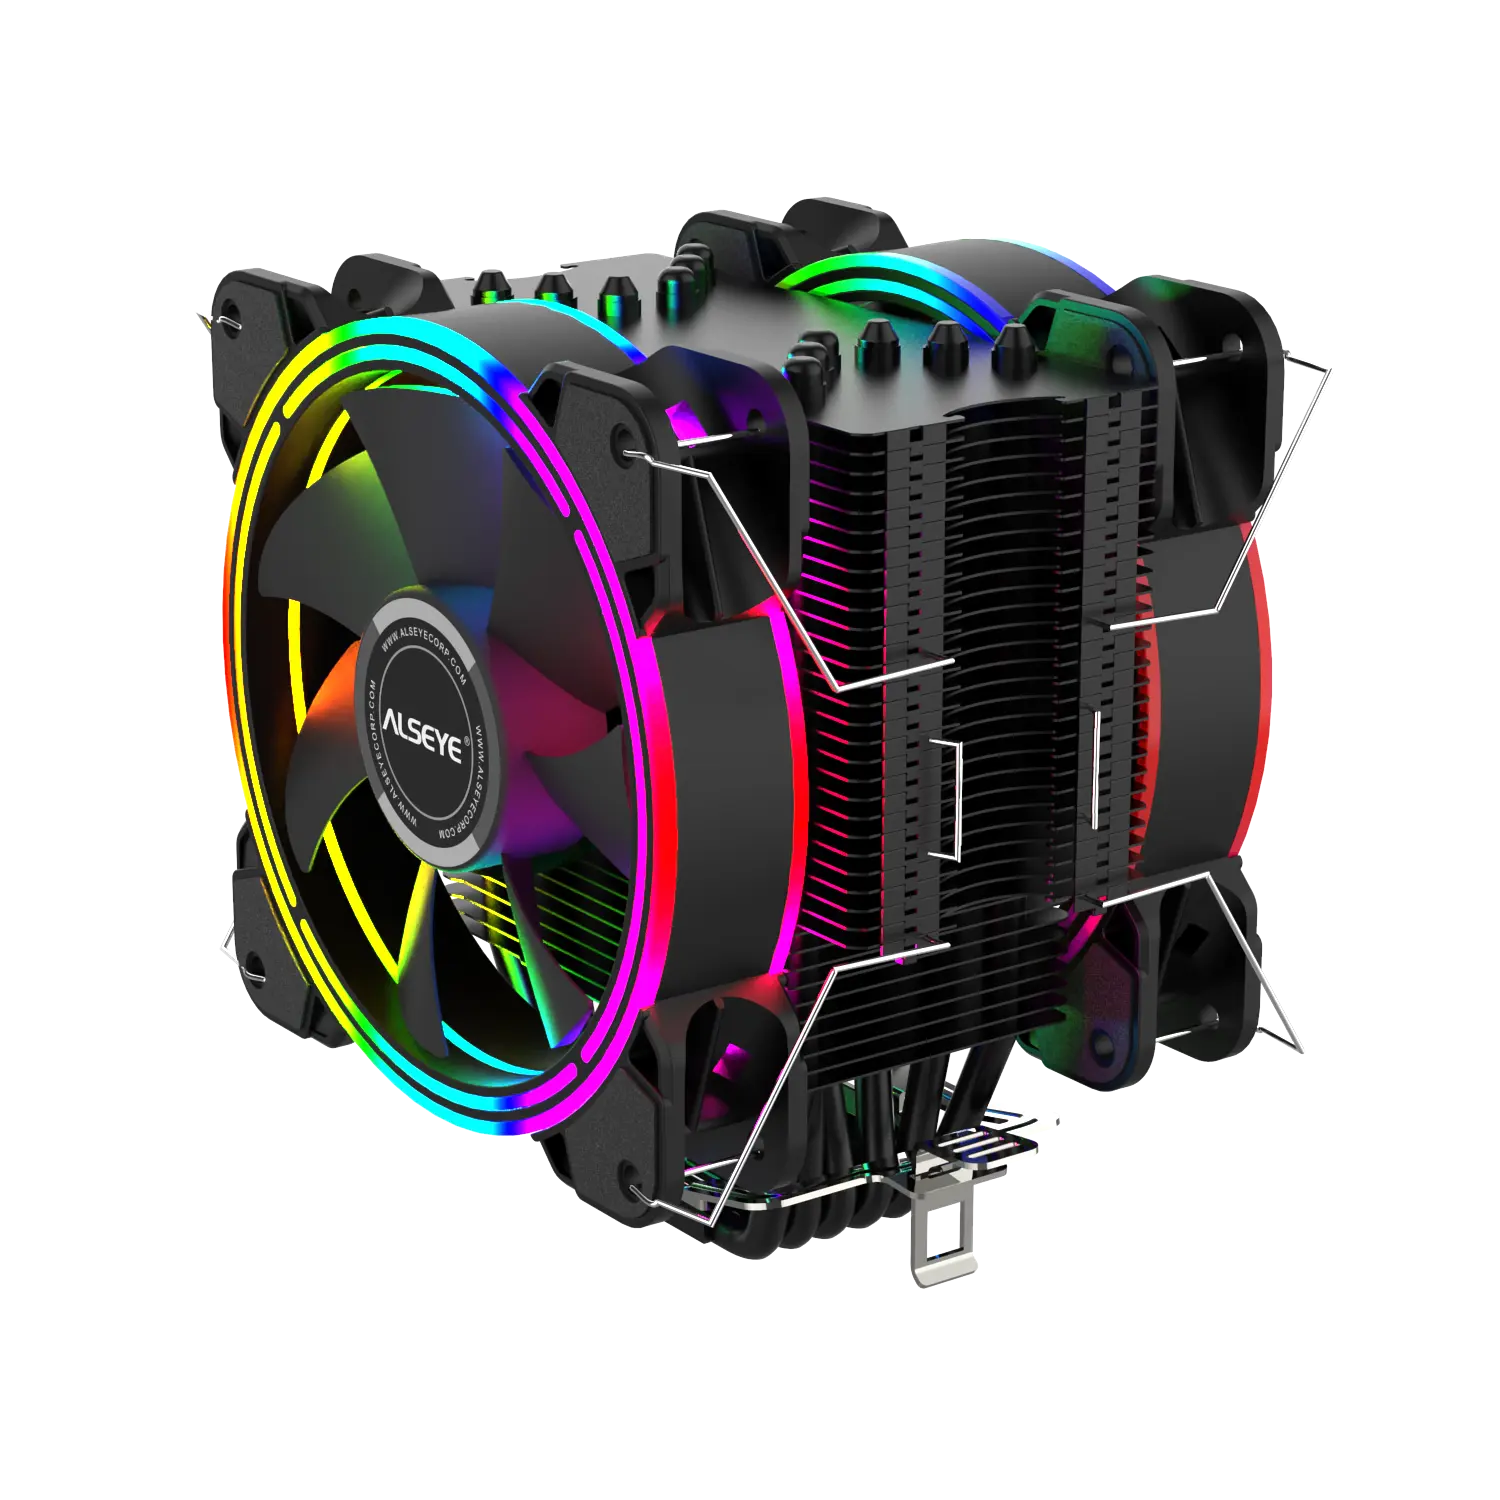 ALSEYE H120D процессор охладитель воздуха вентилятор RGB 12025 мм ШИМ 4 Pin 6 тепловых трубок кулер